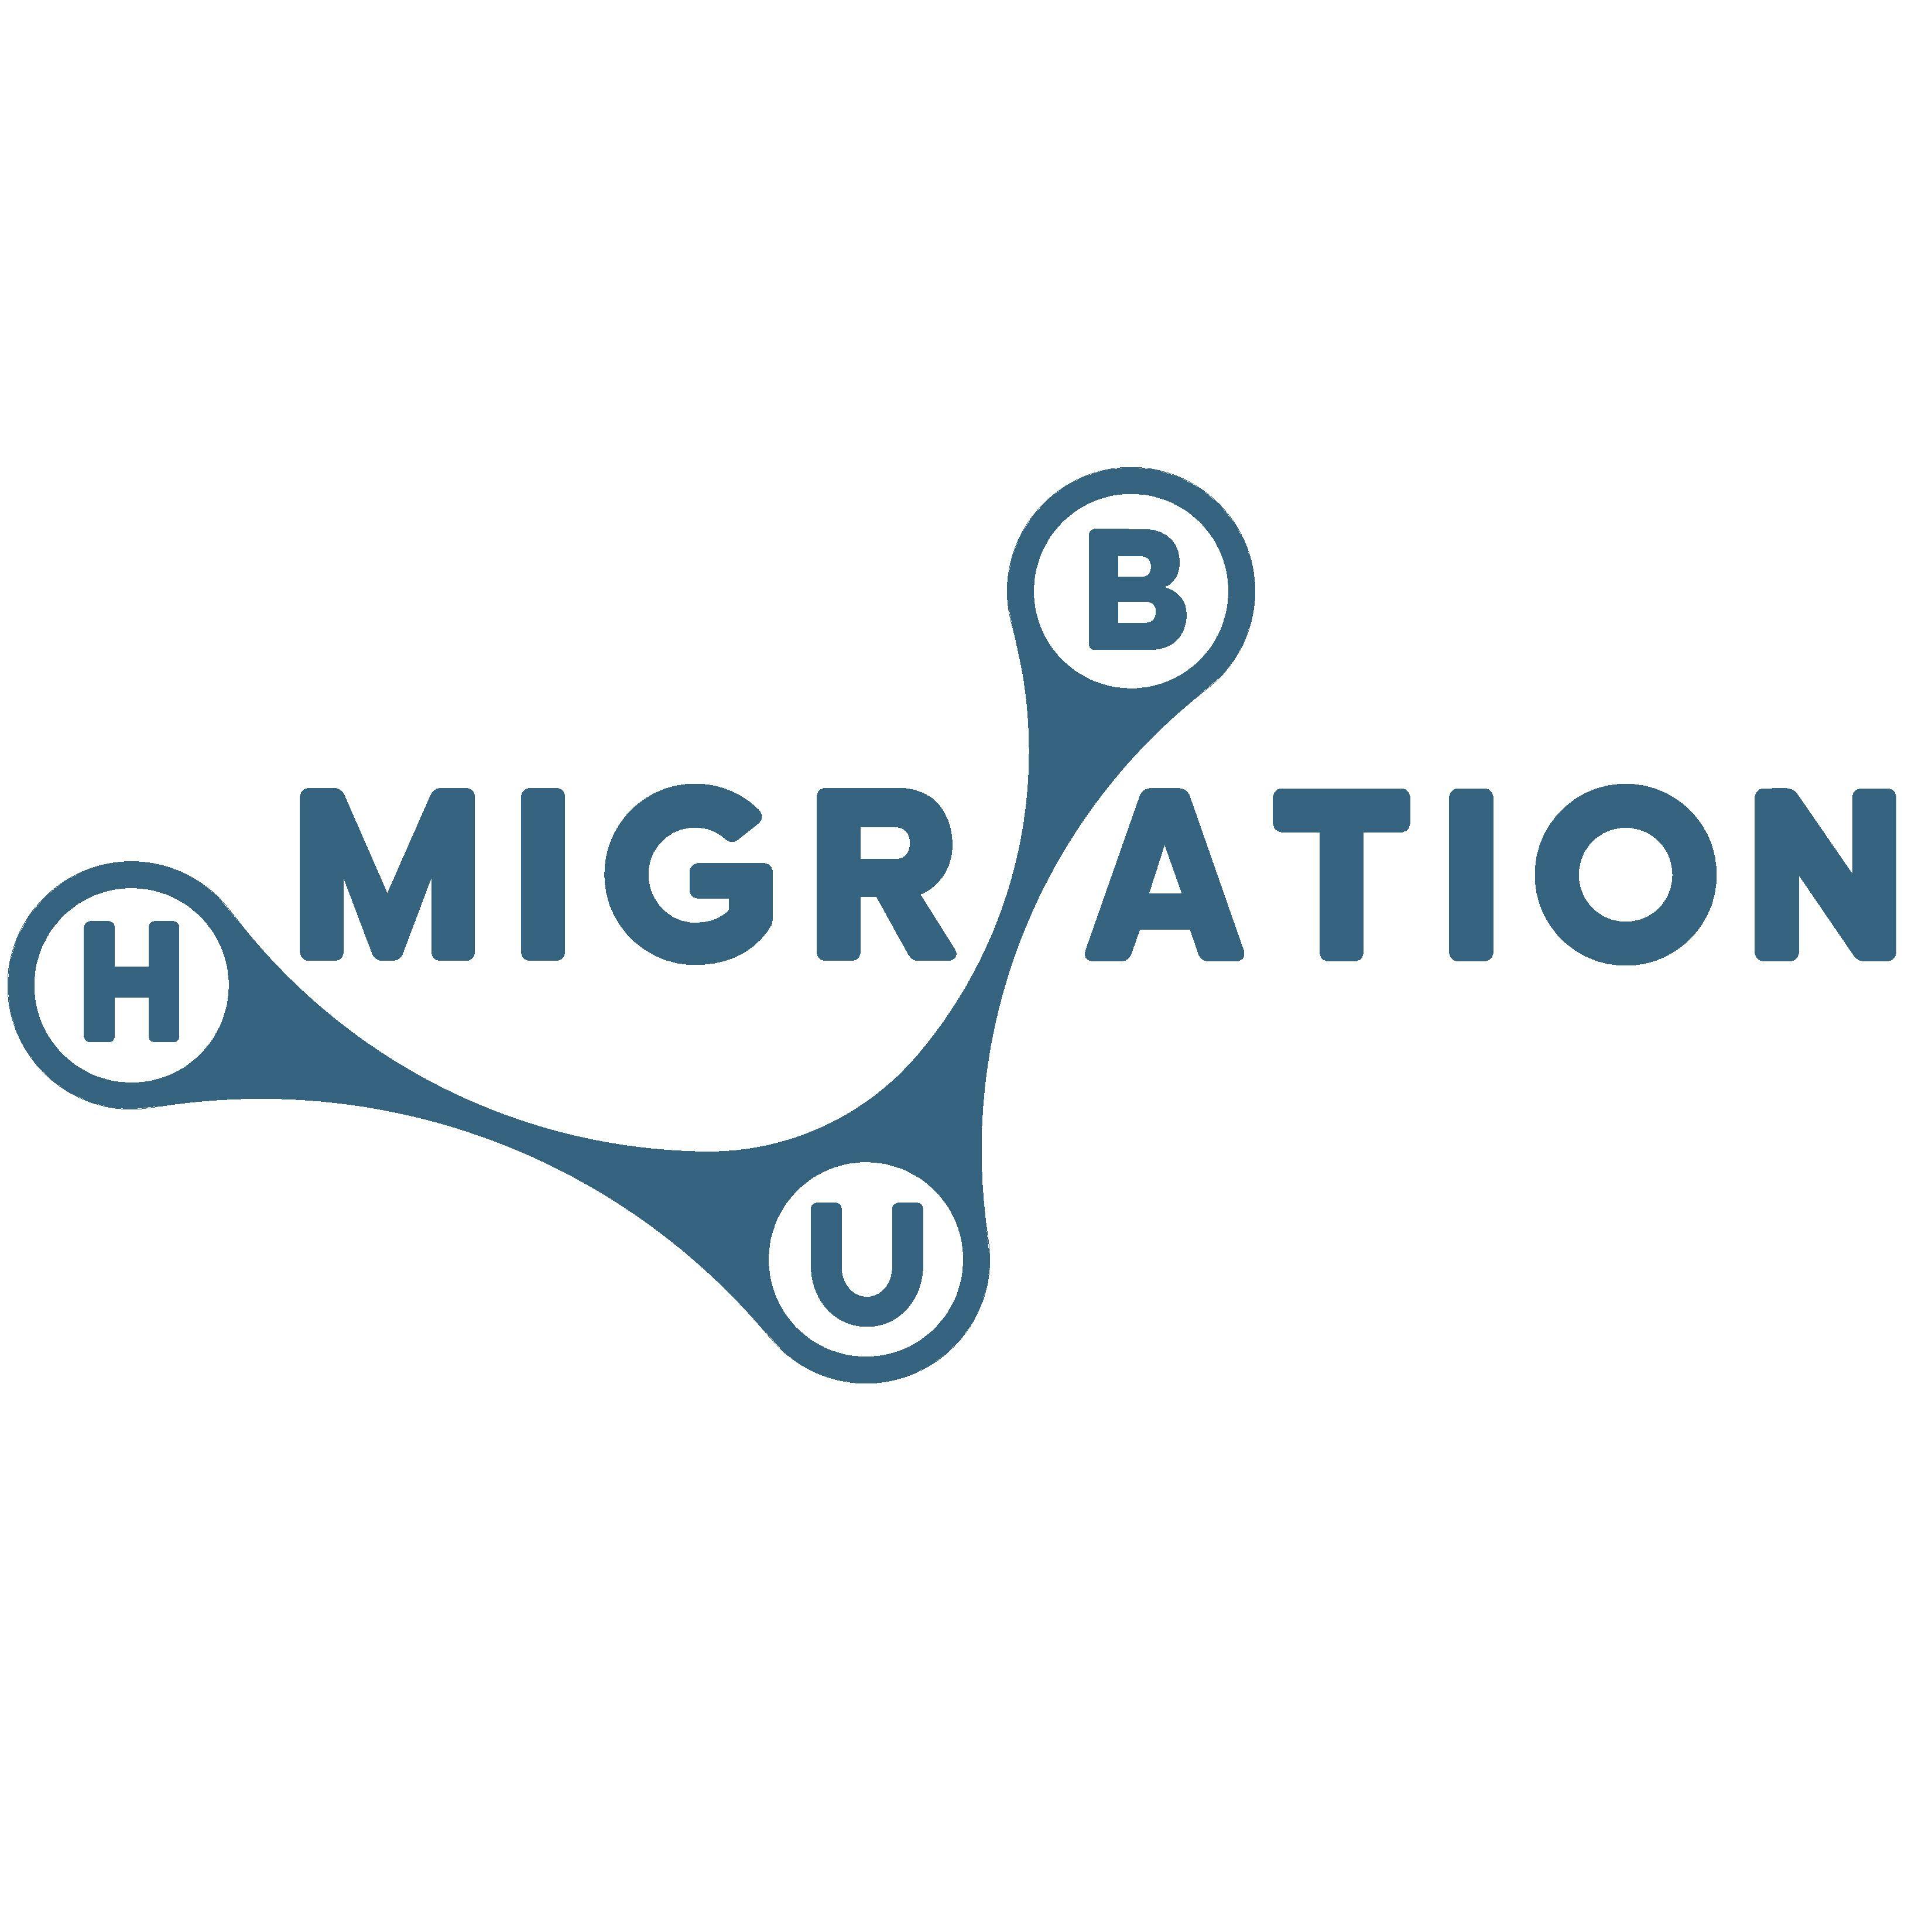 Migration Logo - Migration Hub Network